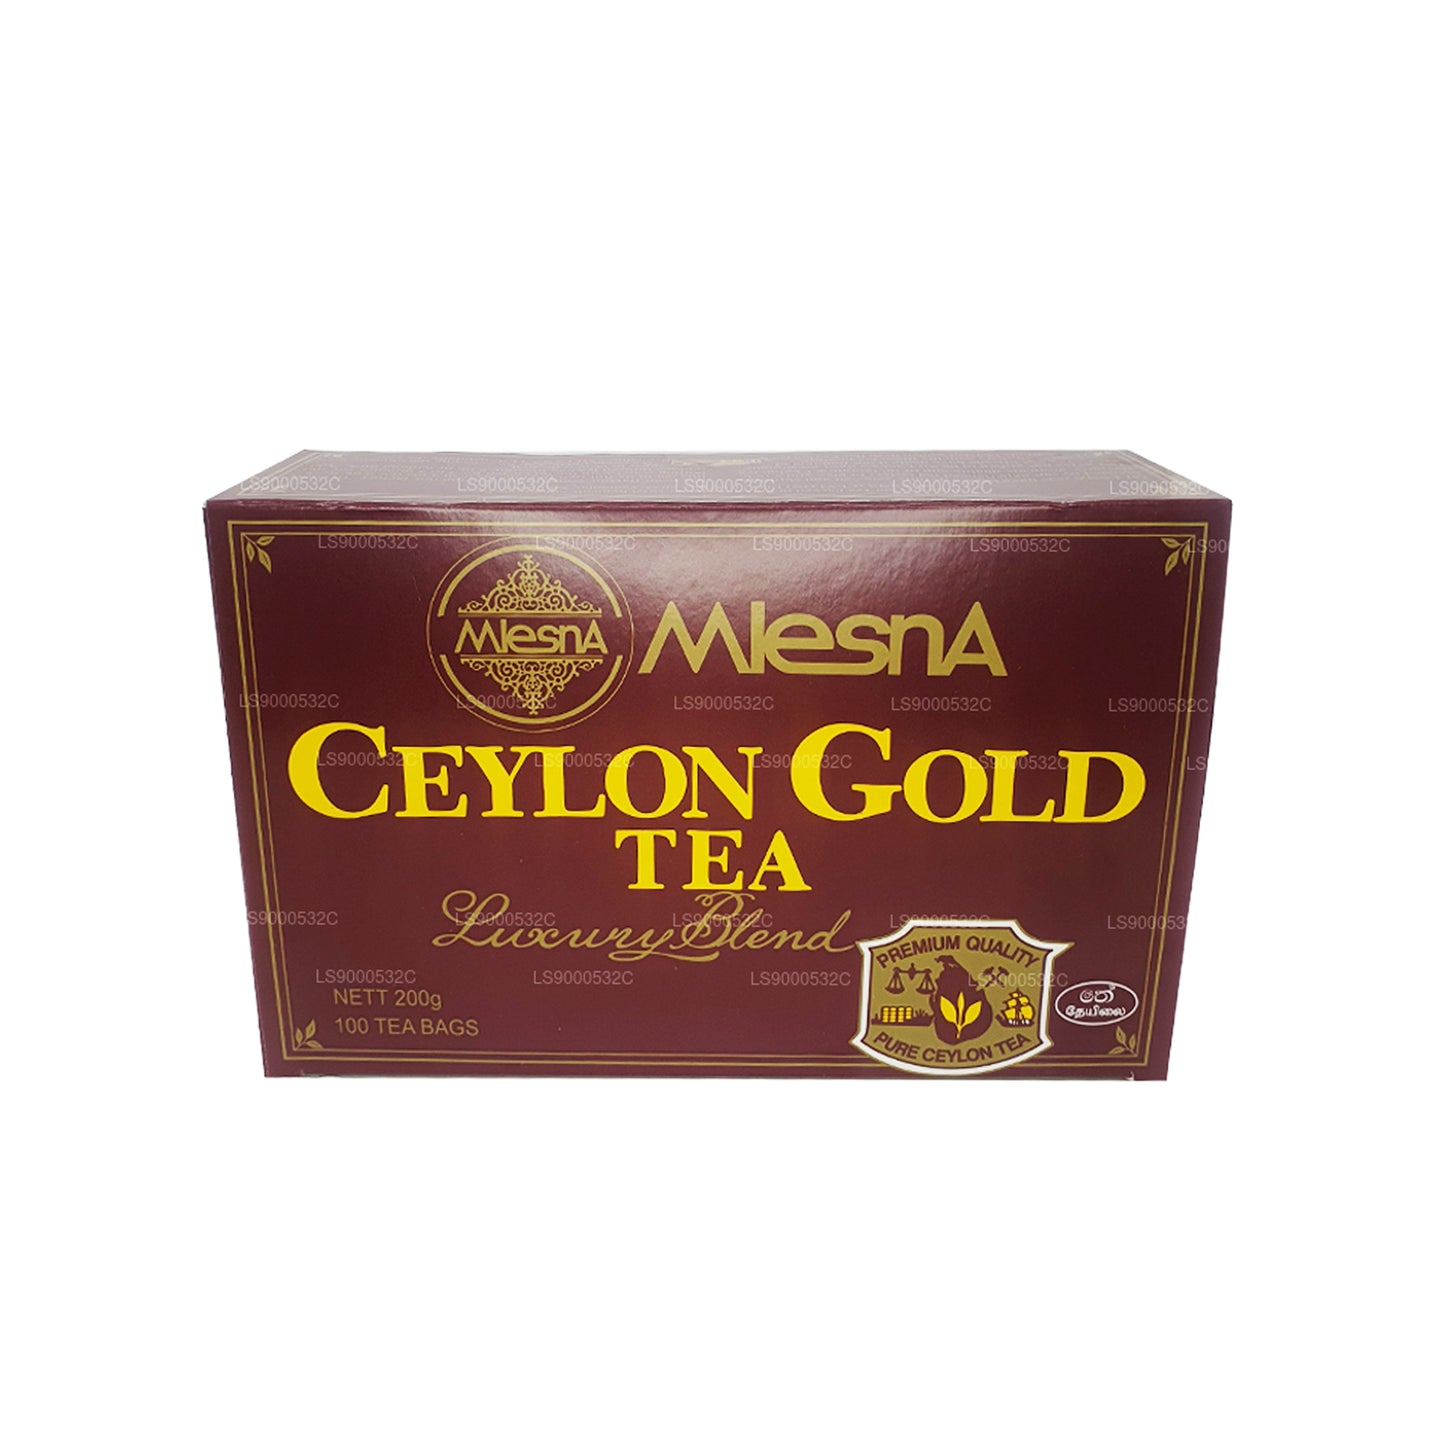 100 sachets de thé Mlesna Tea Ceylon Gold (200 g), ficelle et étiquette